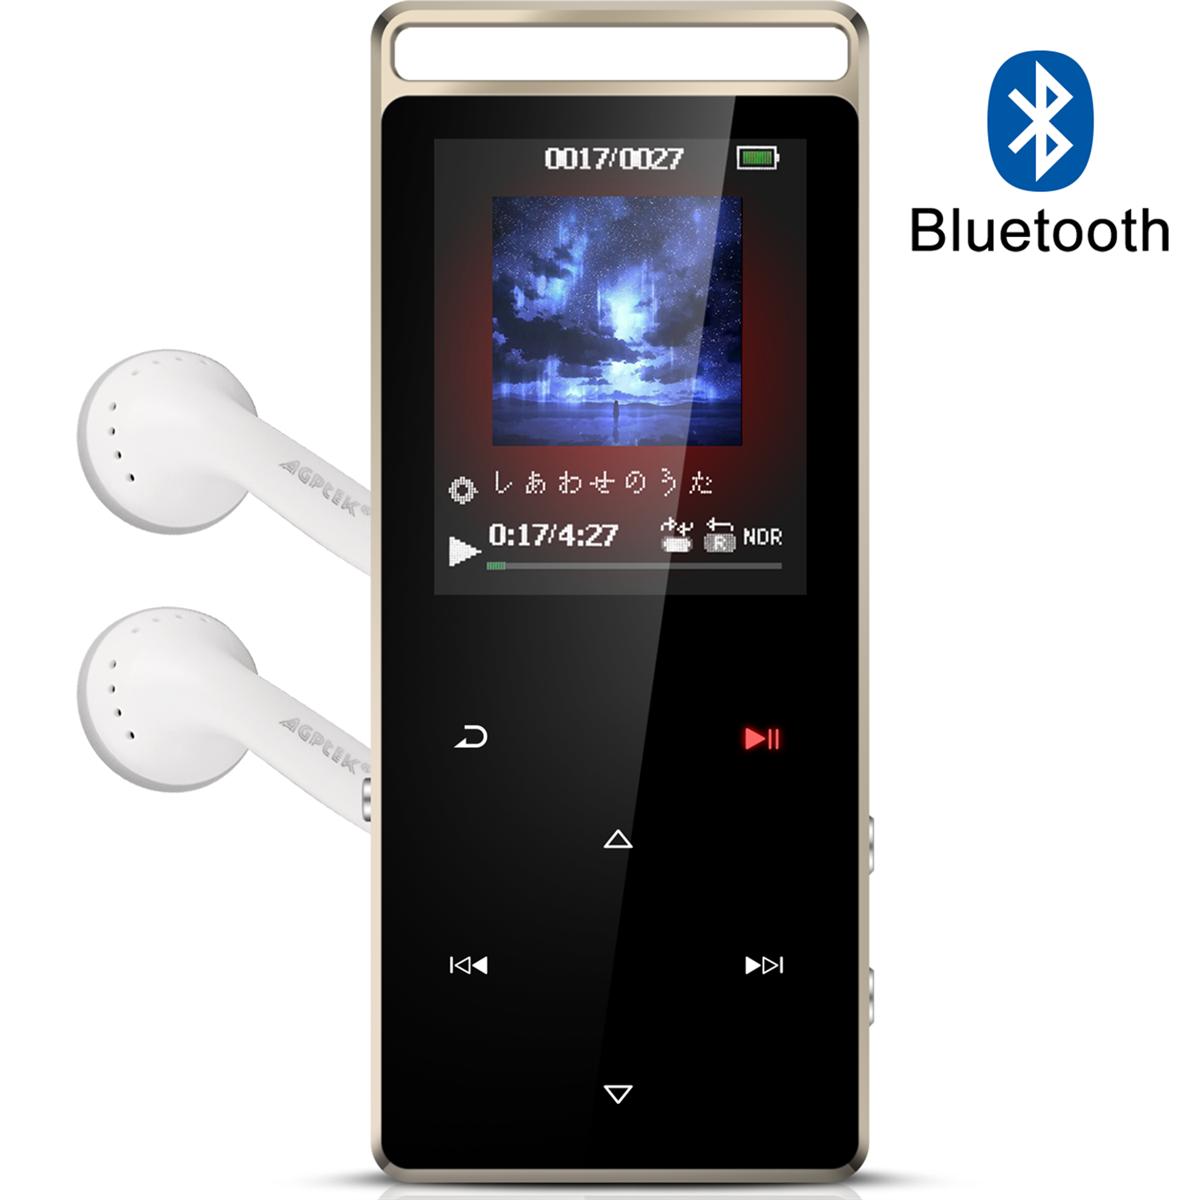 AGPTEK Bluetooth対応 mp3プレーヤー HIFI超高音質 デジタルオーディオプレーヤー 歩数計 FMラジオ 合金製 内蔵8GB マイクロSDカード対応 アームバンド付属 mp3プレイヤー 音楽プレーヤー ミュージックプレイヤー ランニング スポーツ ブラック A01T